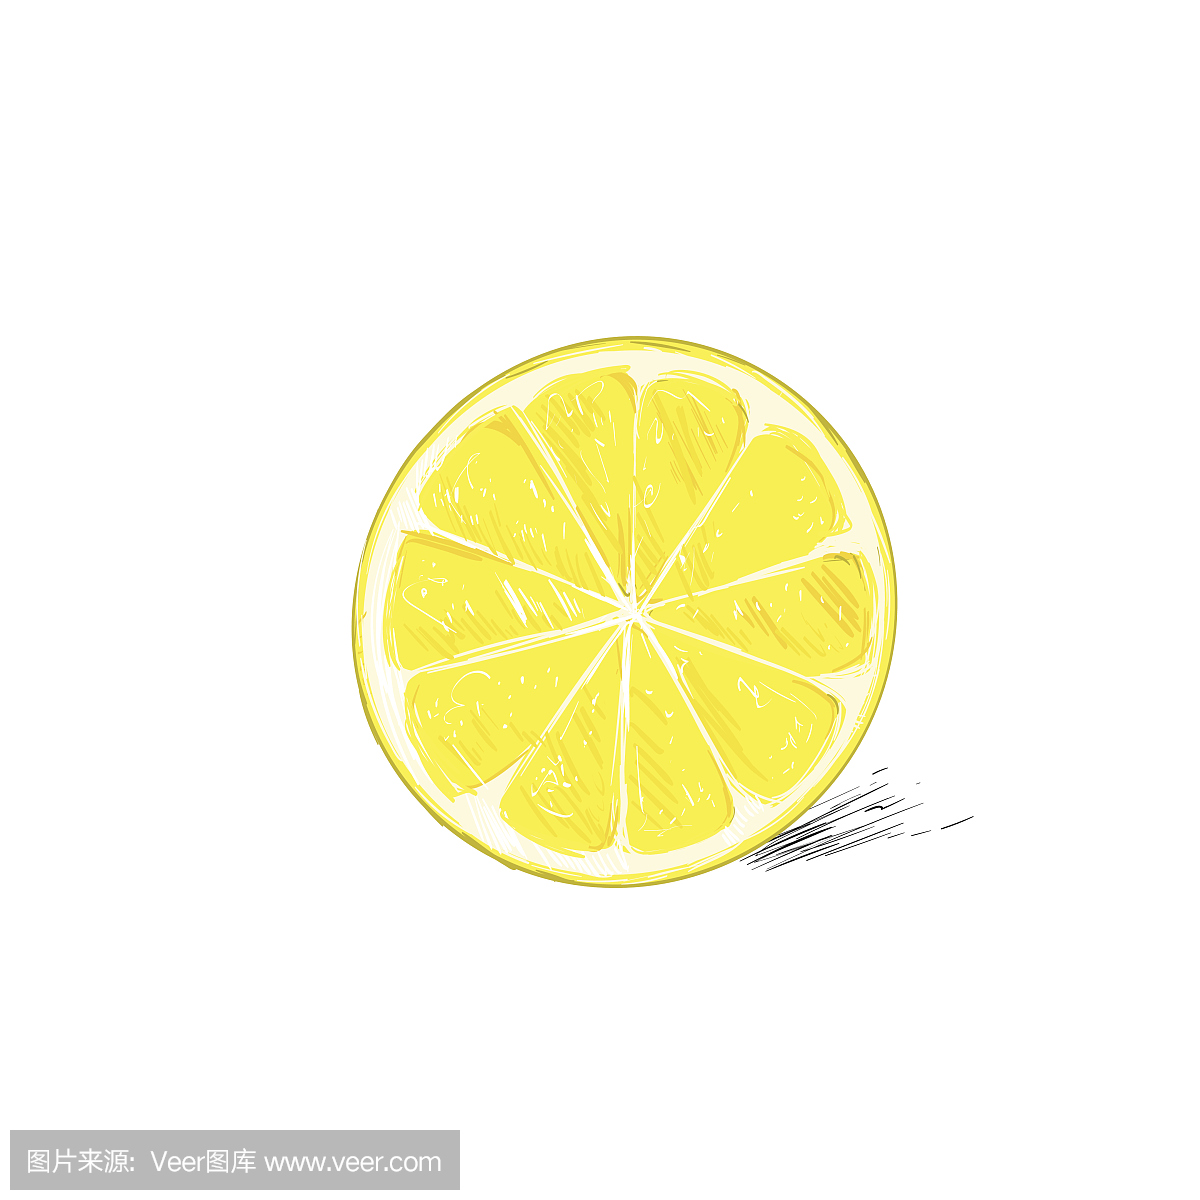 柠檬半切圆柑橘水果颜色素描画